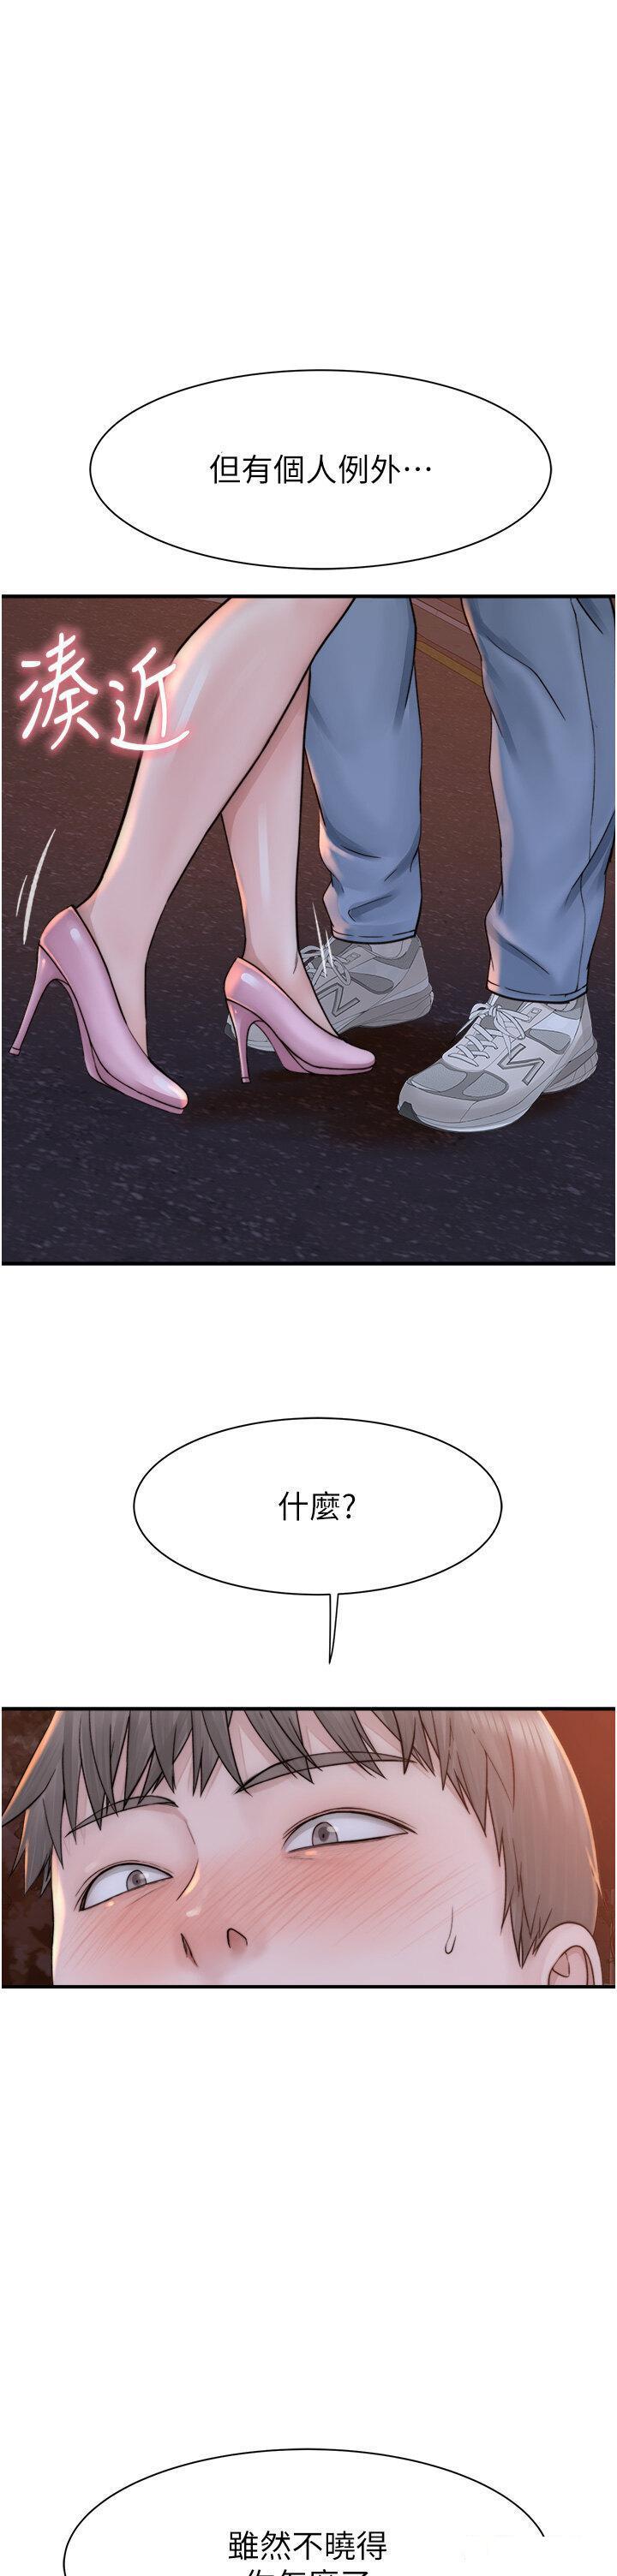 韩国污漫画 繼母的香味 第26话 祕密的幻想对象 1